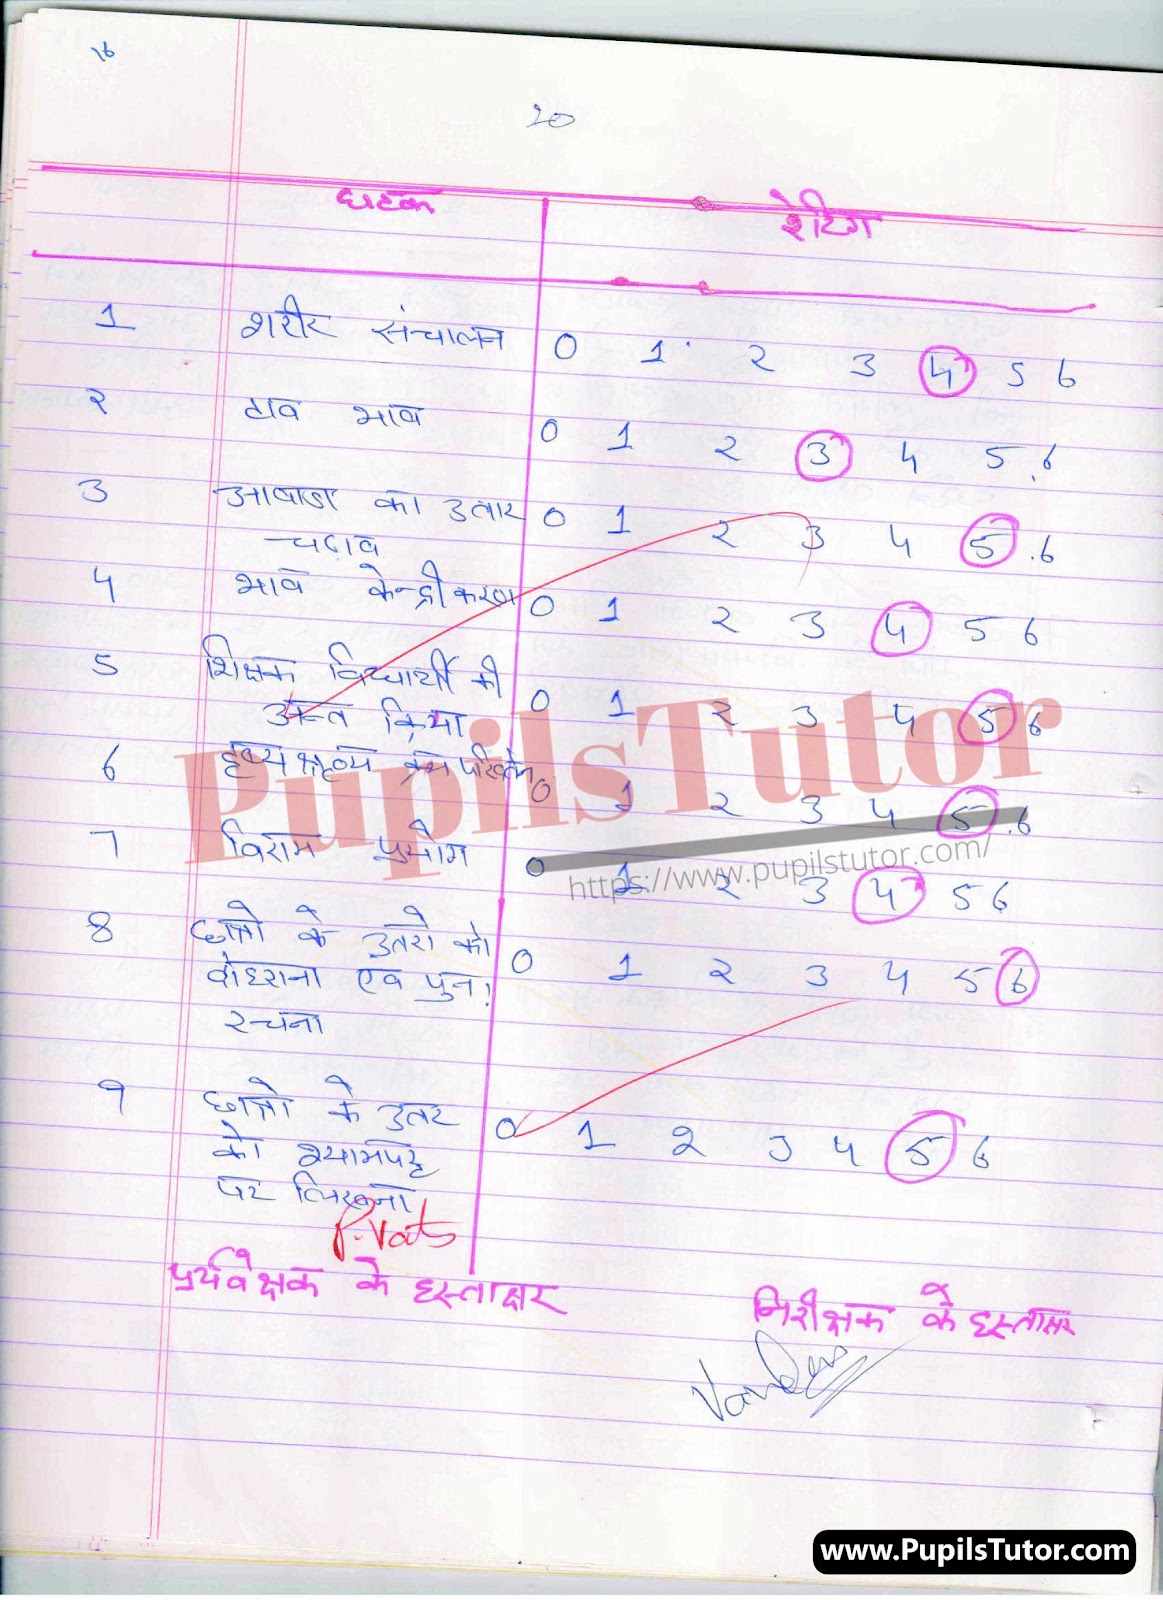 BED, DELED, BTC, BSTC, M.ED, DED And NIOS Teaching Of Economics Innovative Digital Lesson Plan Format In Hindi On Mang Ke Niyam (Law Of Demand) Topic For Class 4th 5th 6th 7th 8th 9th, 10th, 11th, 12th | मांग के नियम टॉपिक पर टीचिंग ऑफ इकोनॉमिक्स का डिजिटल लेसन प्लान फॉर्मेट हिंदी में कक्षा 4 5 वीं 6 वीं 7 वीं 8 वीं 9 वीं, 10 वीं, 11 वीं, 12 वीं के लिए  – [Page And Photo 4] – pupilstutor.com